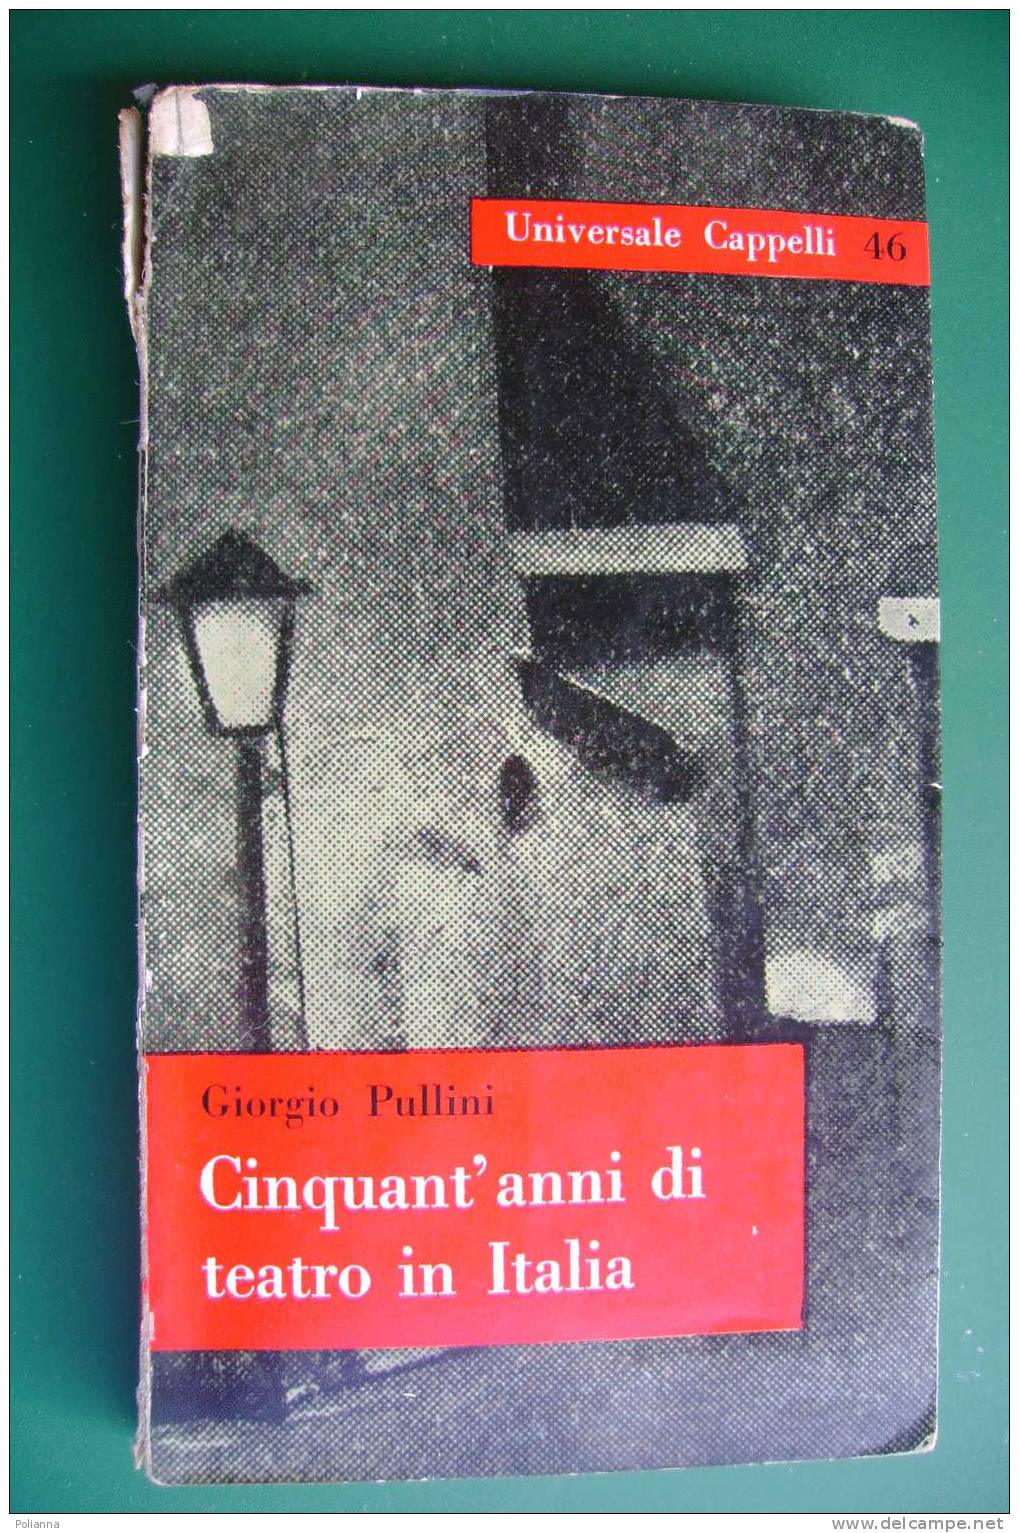 PDD/32 Giorgio Pullini CINQUANT'ANNI DI TEATRO IN ITALIA Universale Cappelli 1960/Eleonora Duse/Edoardo De Filippo - Theater